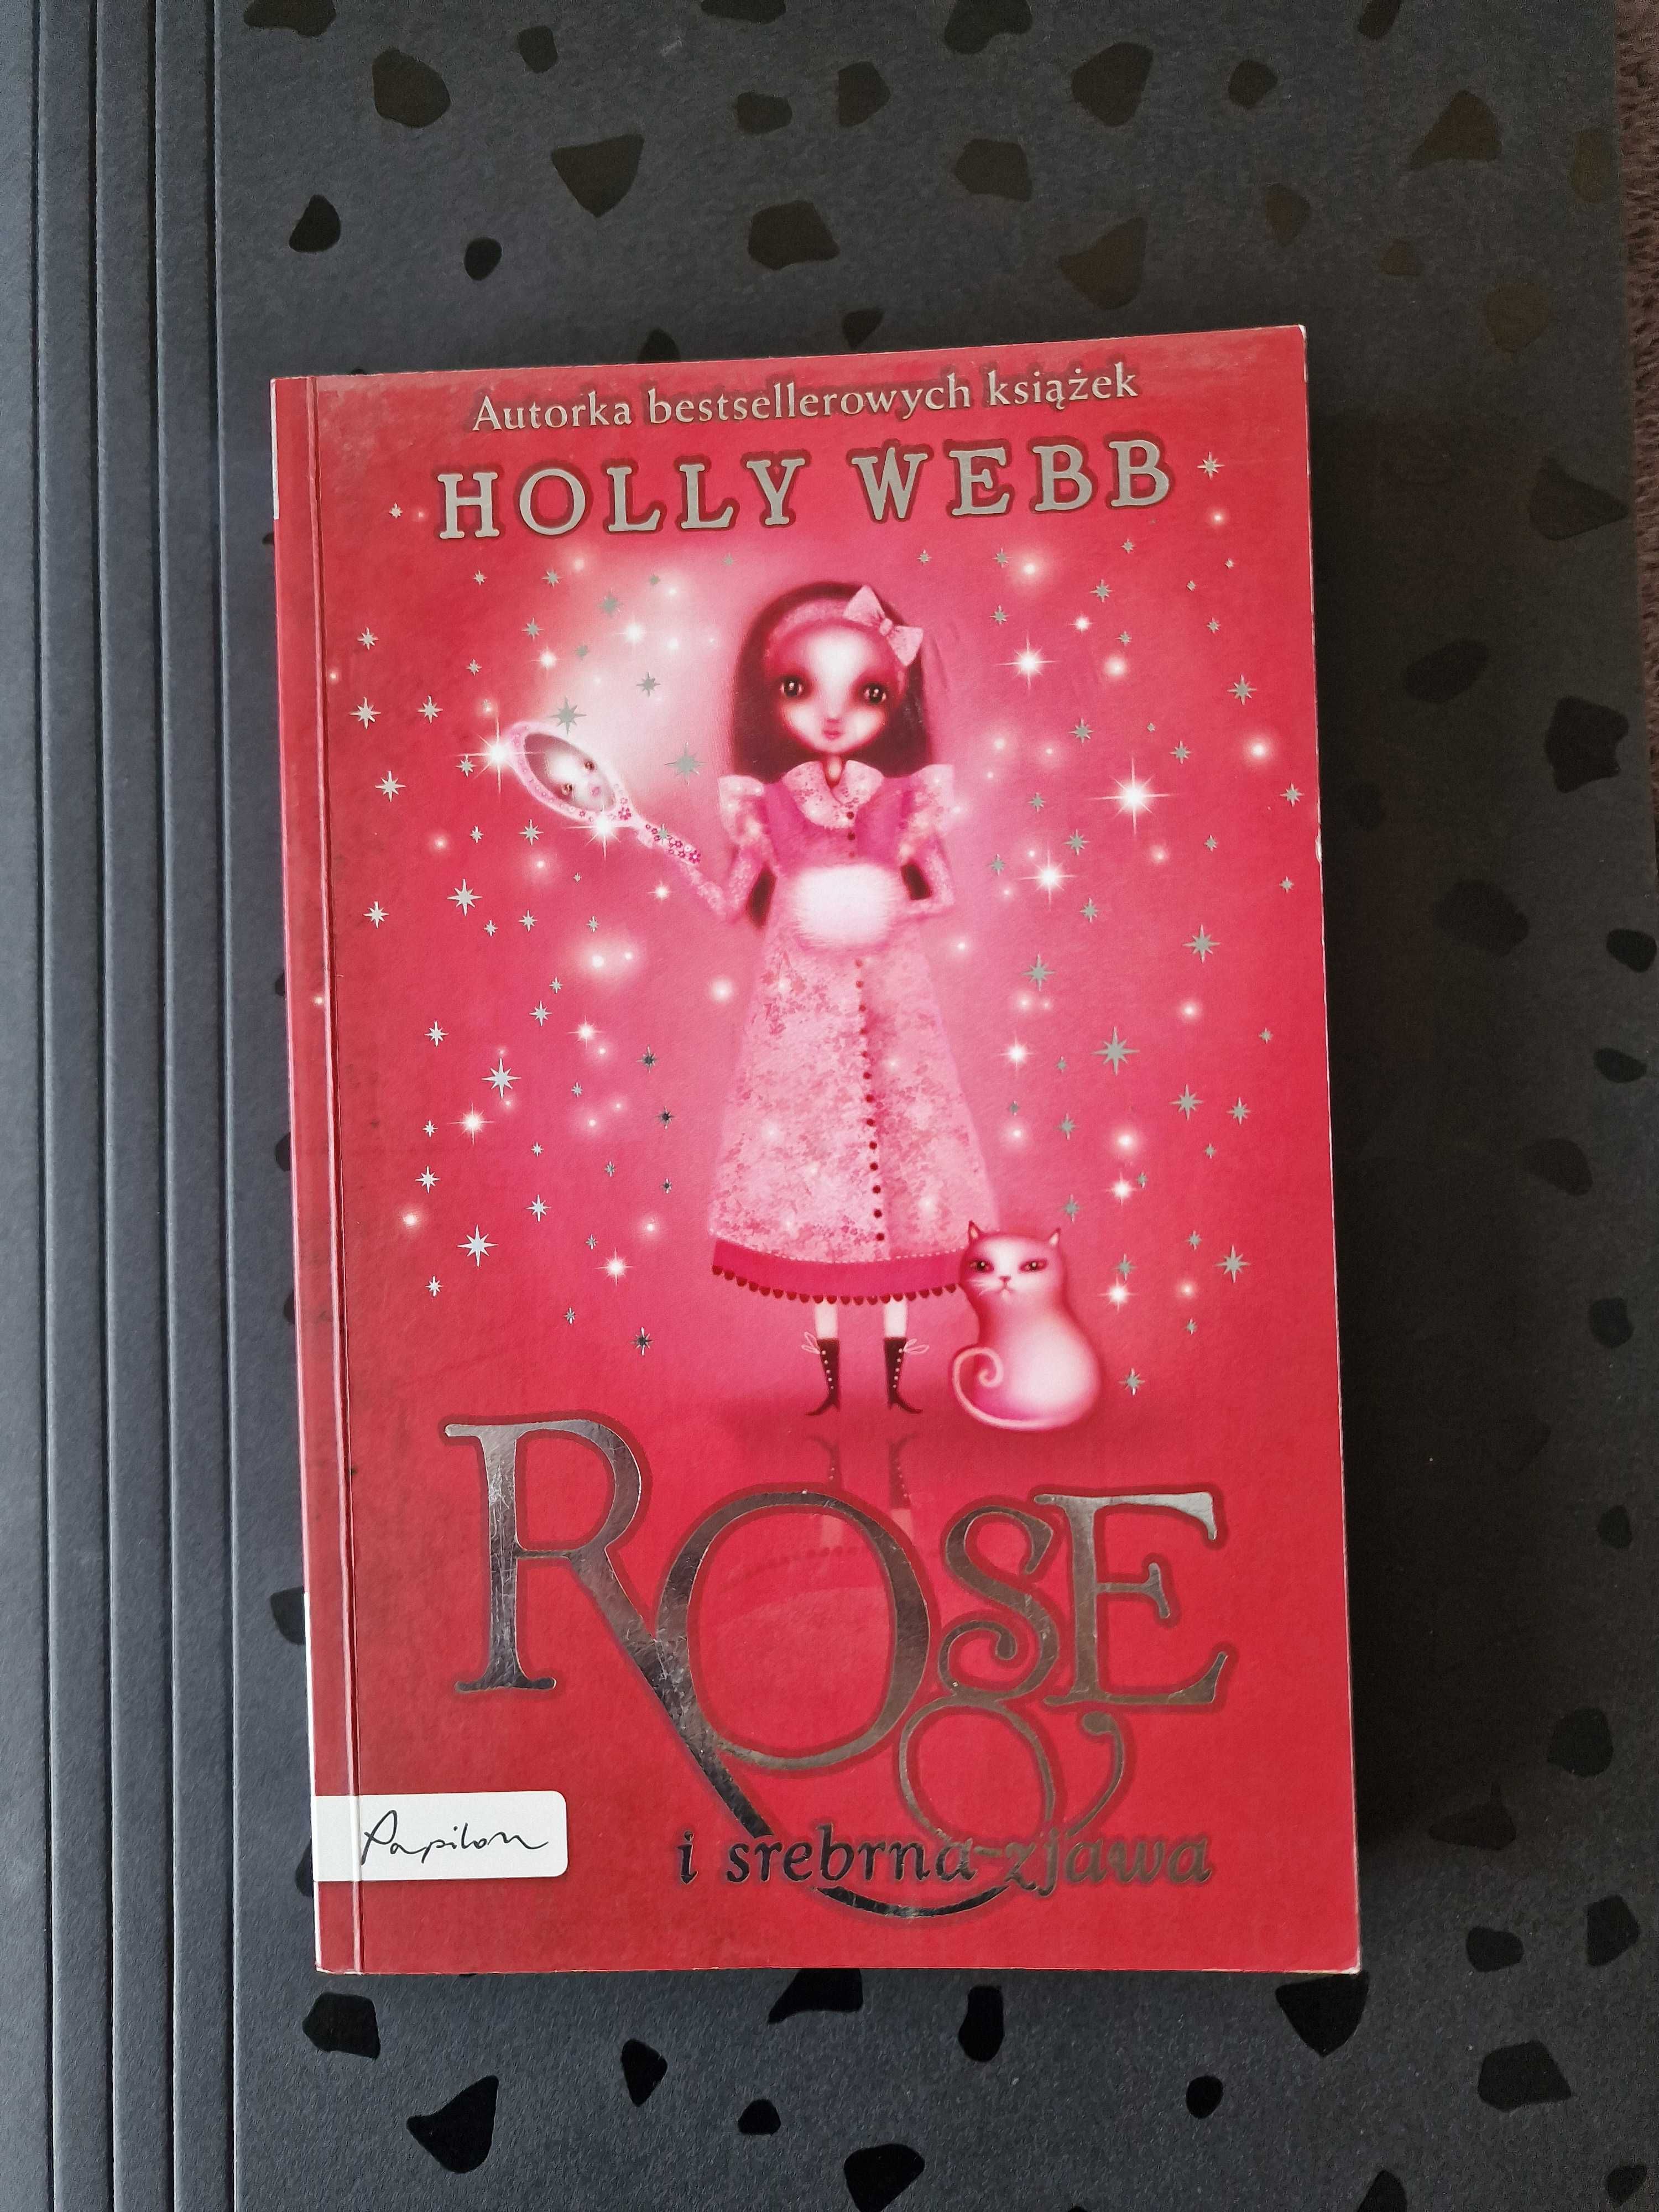 Holly Webb "Rose i srebrna zjawa"